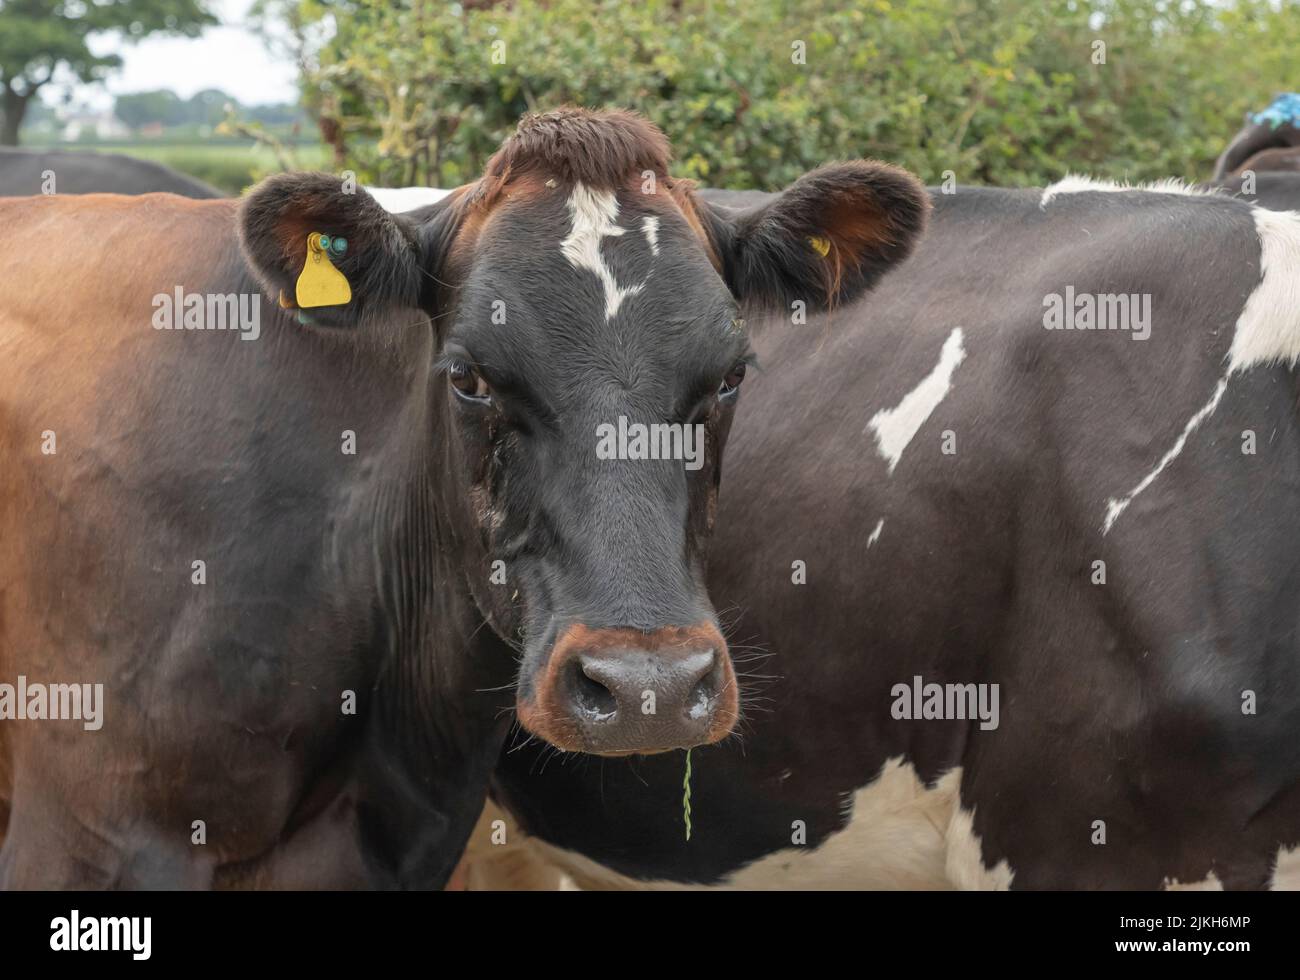 Schwarz-braune Kuh watete mit einem Stück Gras im Mund und schaute direkt auf die Kamera auf ihrem Weg zum Melkstand Stockfoto